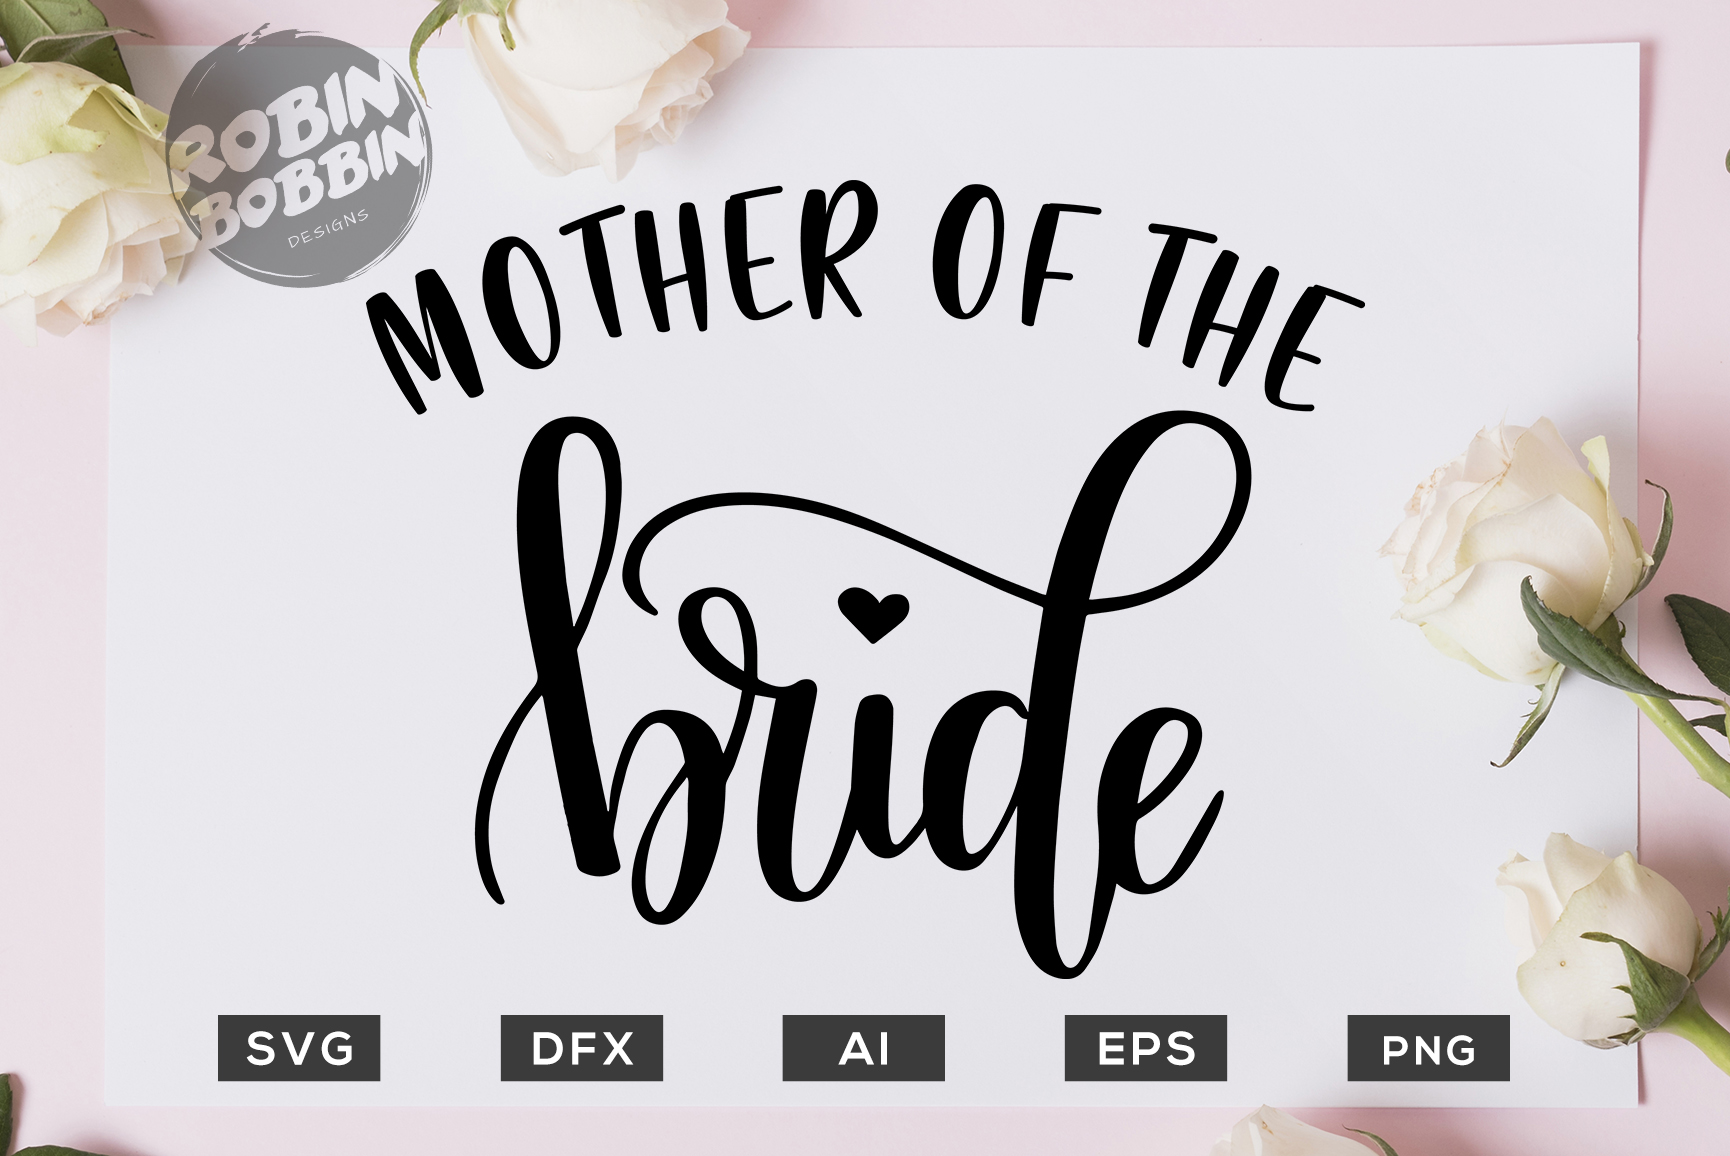 Download Mother of the Bride SVG File - Wedding SVG PNG EPS Files